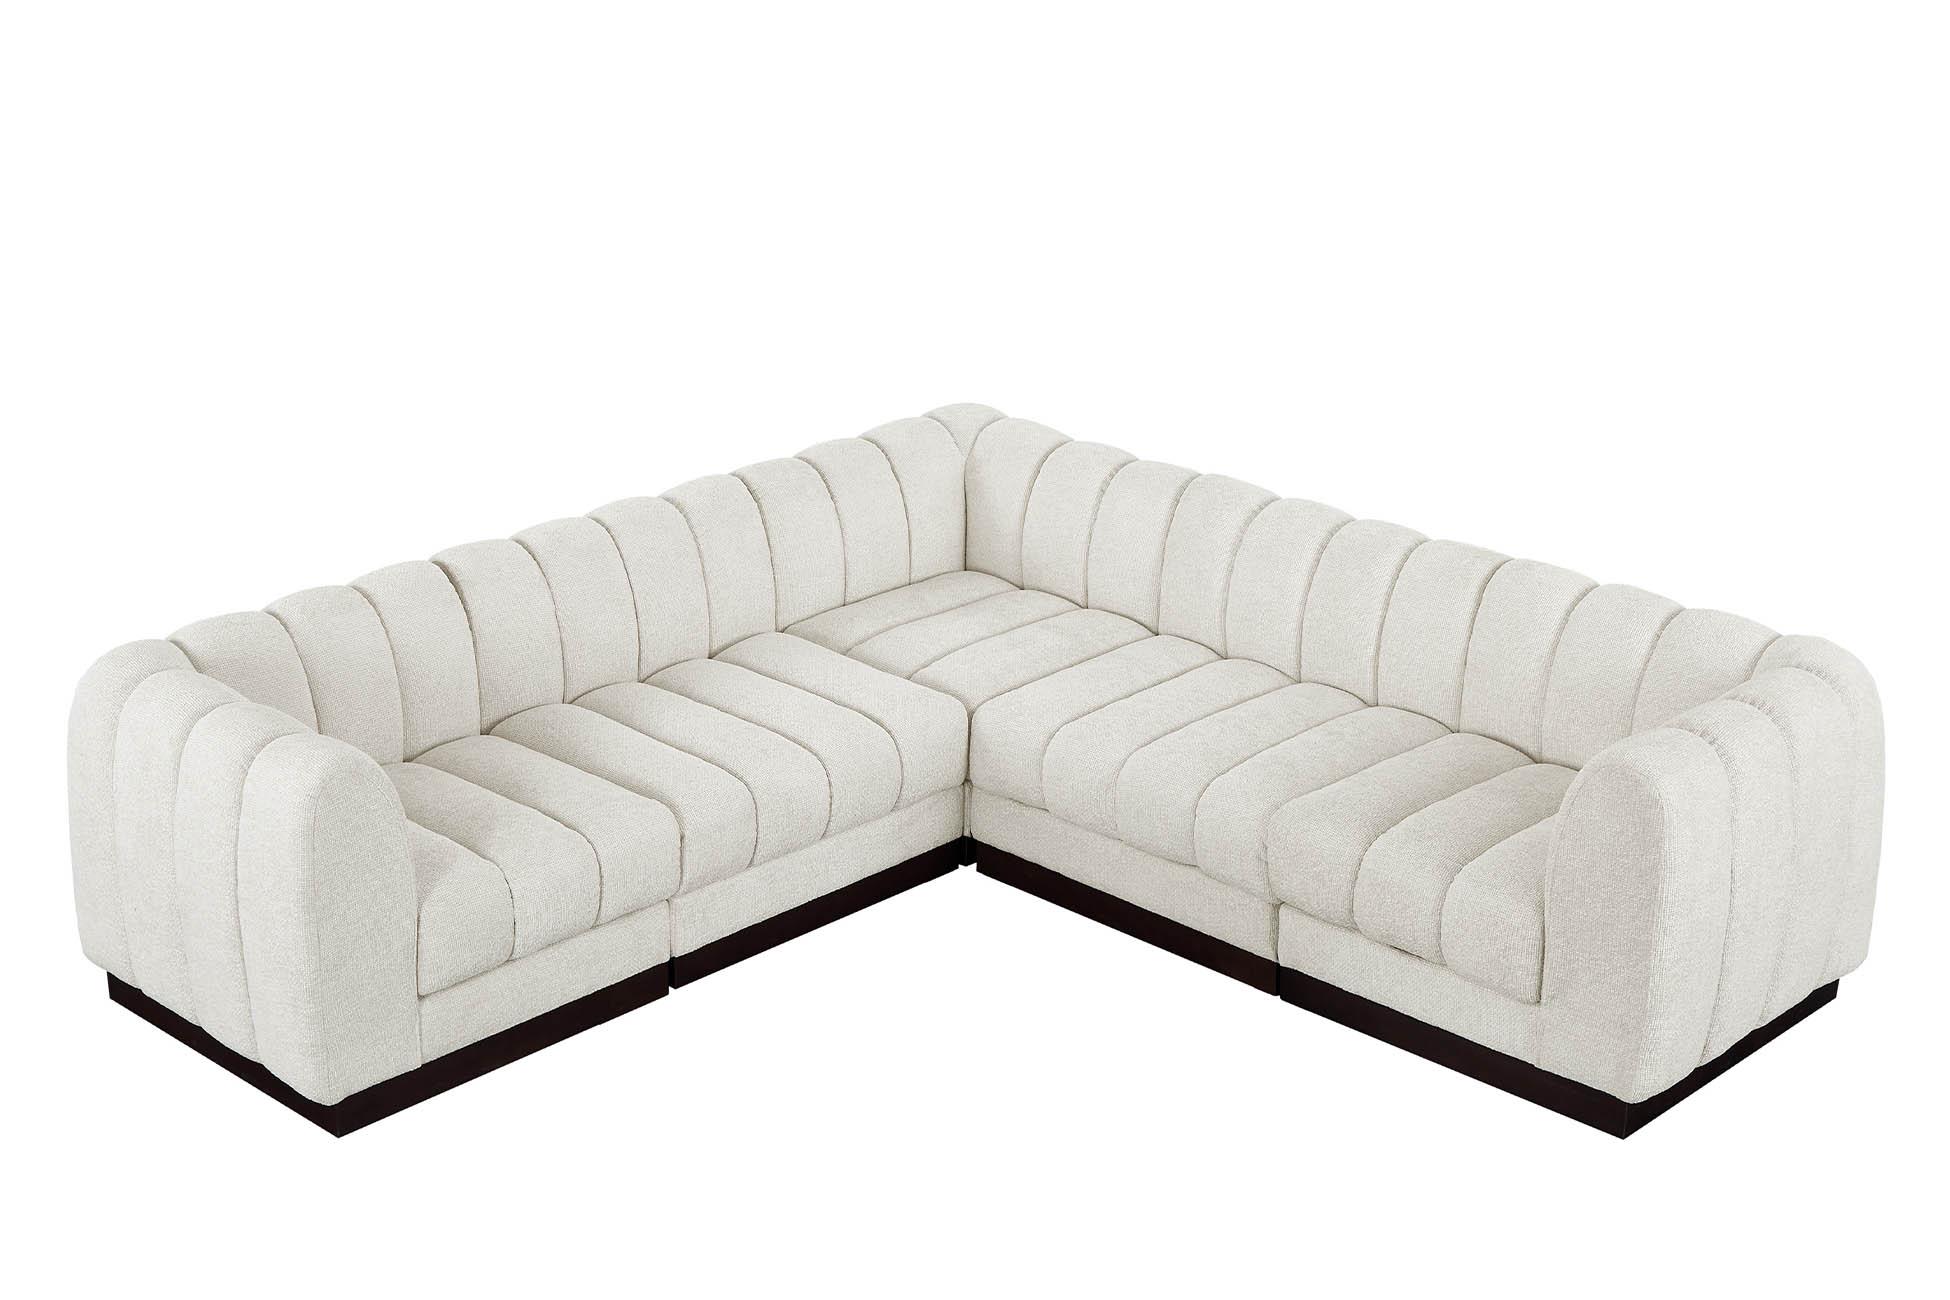 

    
Meridian Furniture QUINN 124Cream-Sec5C Modular Sectional Cream 124Cream-Sec5C
